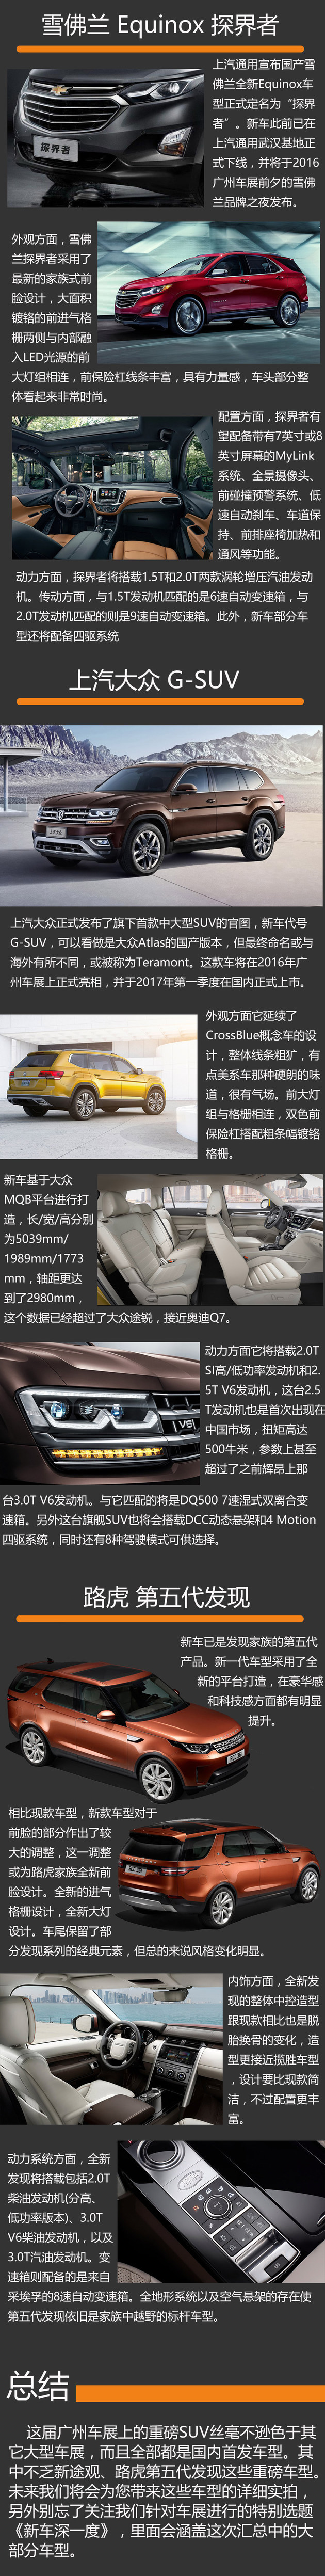 2016广州车展 最值得关注的全新SUV车型